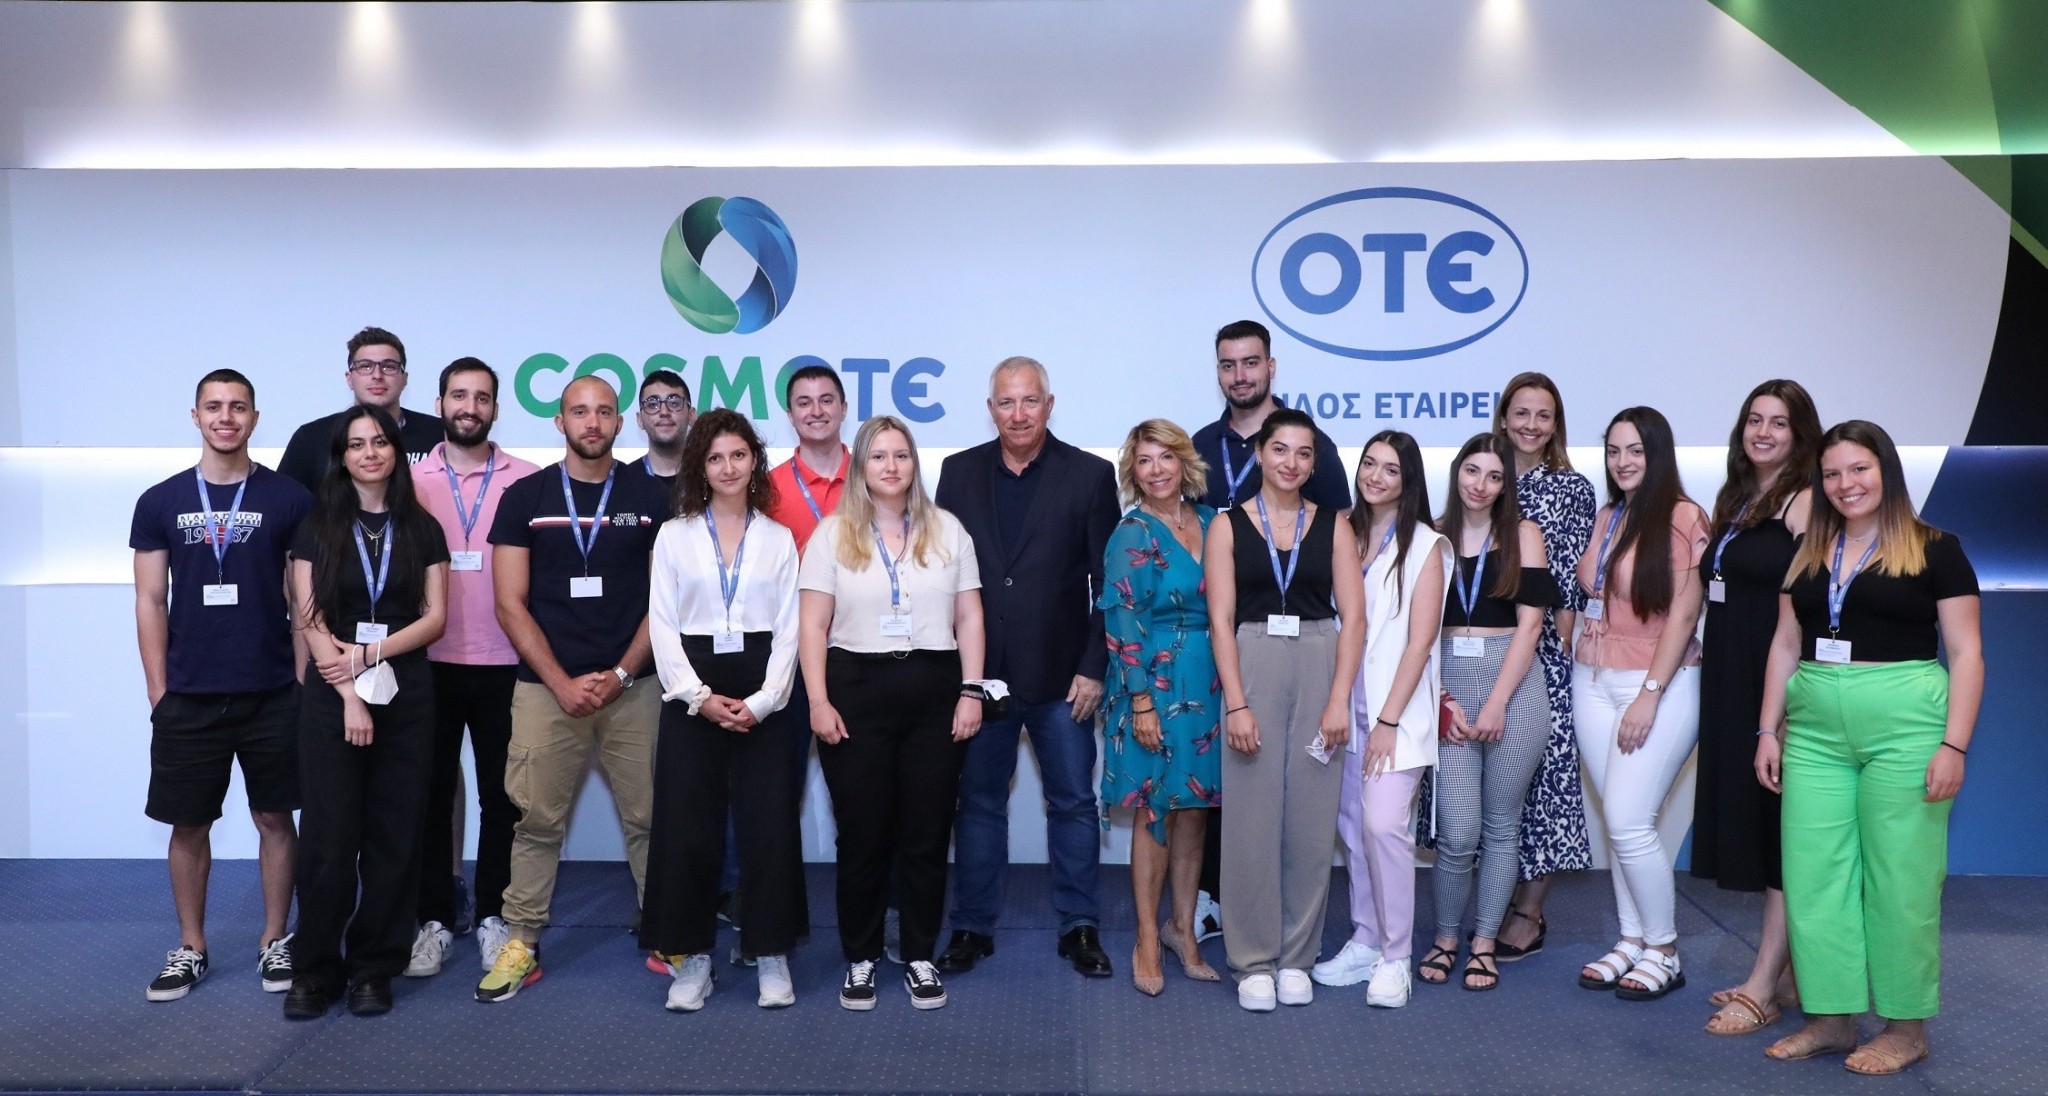 Εργασιακή εμπειρία στον Όμιλο ΟΤΕ και ανάπτυξη ψηφιακών δεξιοτήτων για 20 υπότροφους COSMOTE